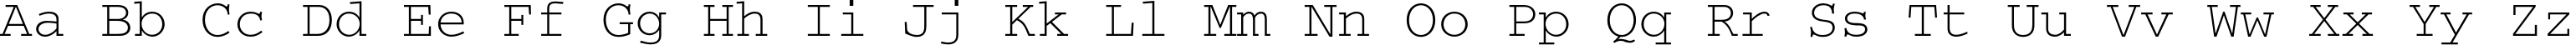 Пример написания английского алфавита шрифтом CourierC